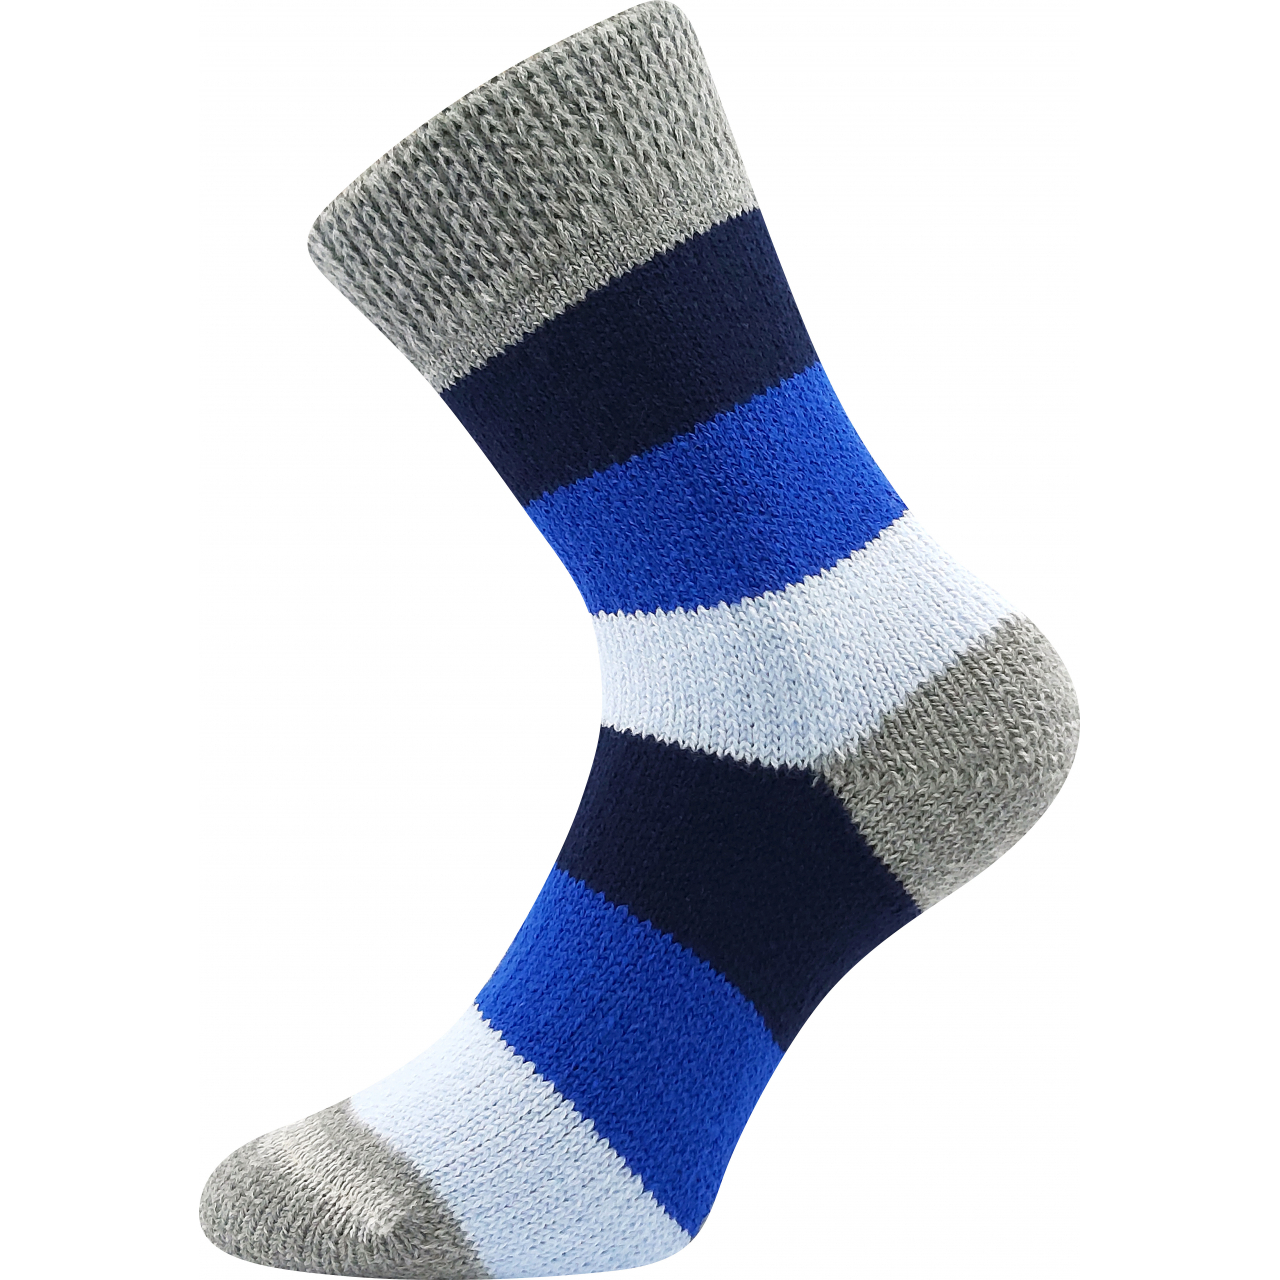 Ponožky spací unisex Boma Spací Pruh - modré-šedé, 43-46